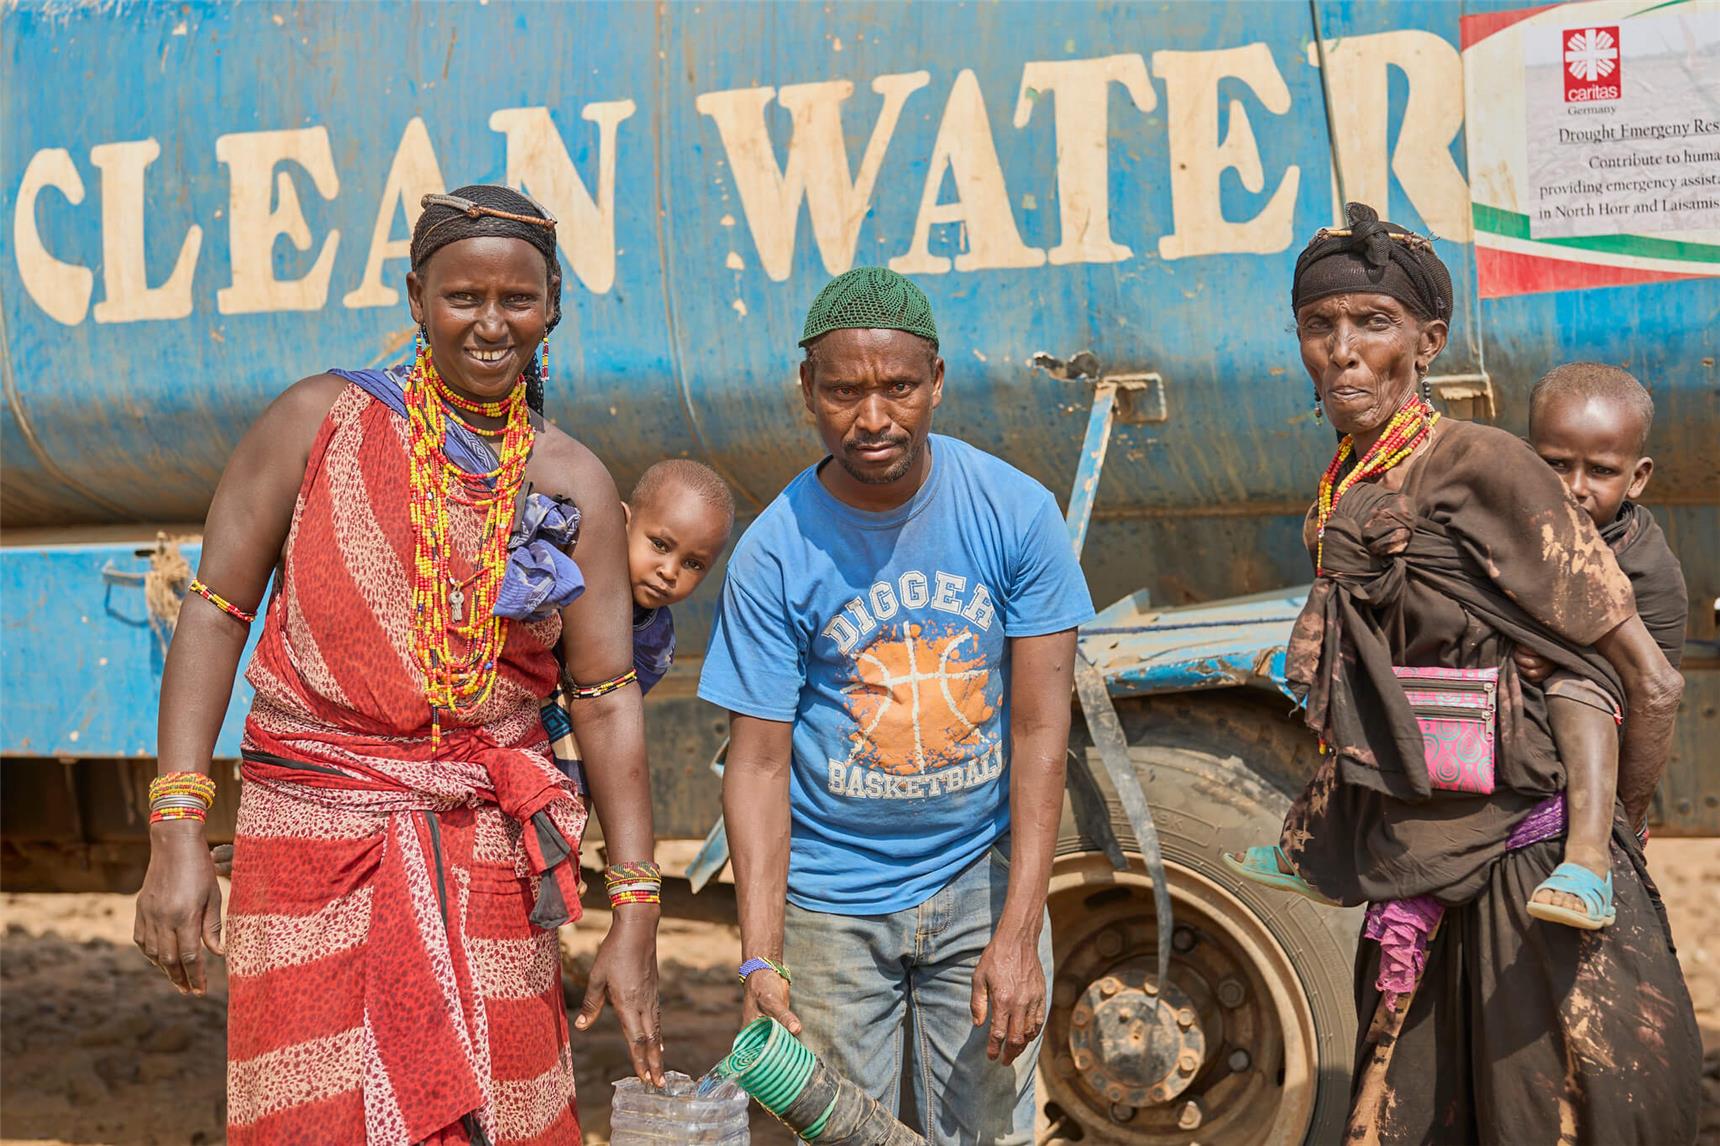 Drei Personen holen frisches Wasser vom Tanklaster in Kenia, Marsabit.